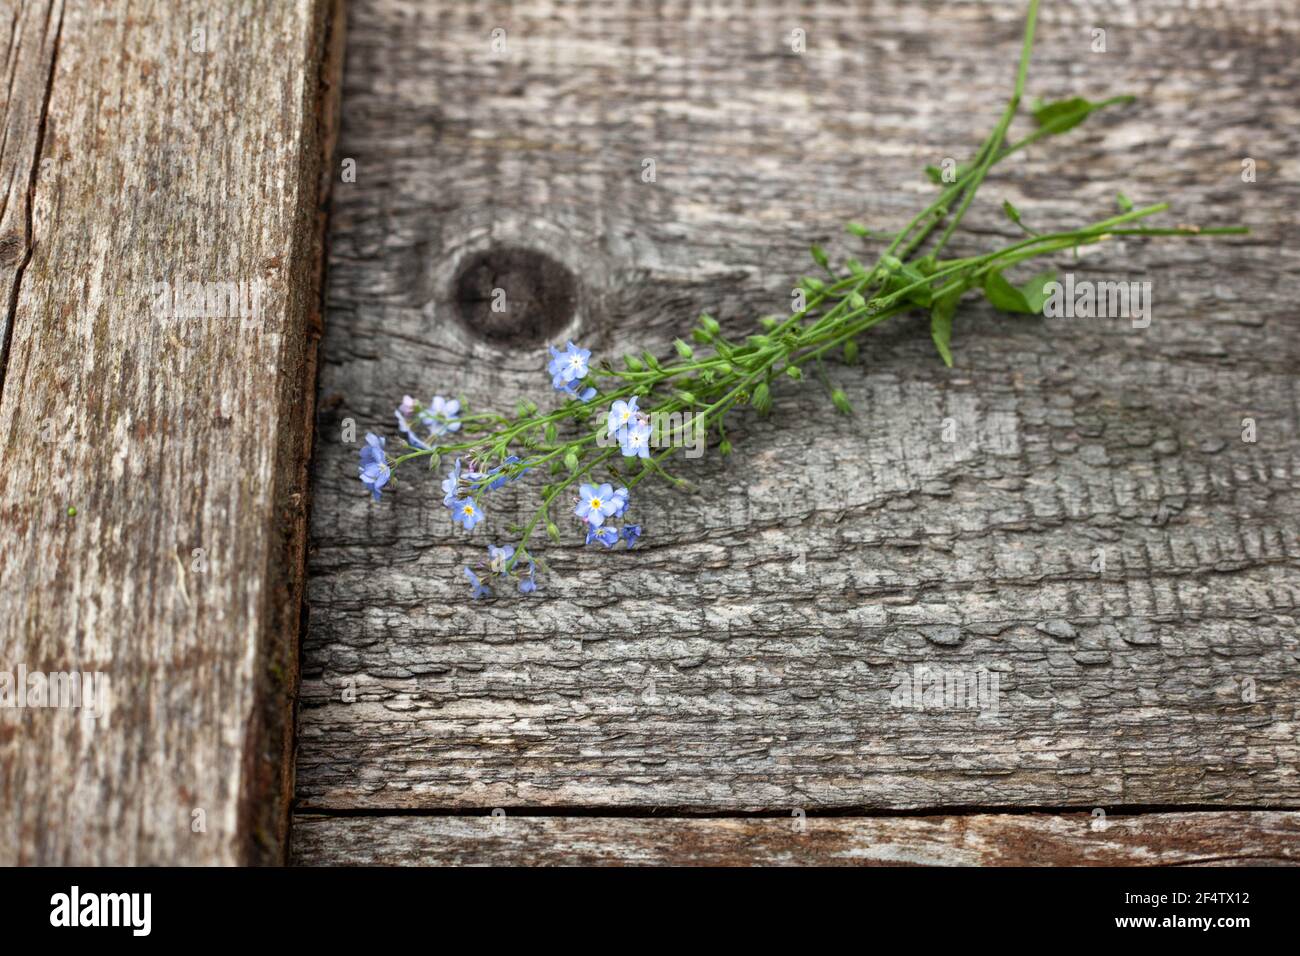 Bouquet von wilden kleinen blauen Blumen auf einem hölzernen alten Hintergrund. Draufsicht mit einer Kopie des Speicherplatzes. Stillleben im Sommer Stockfoto